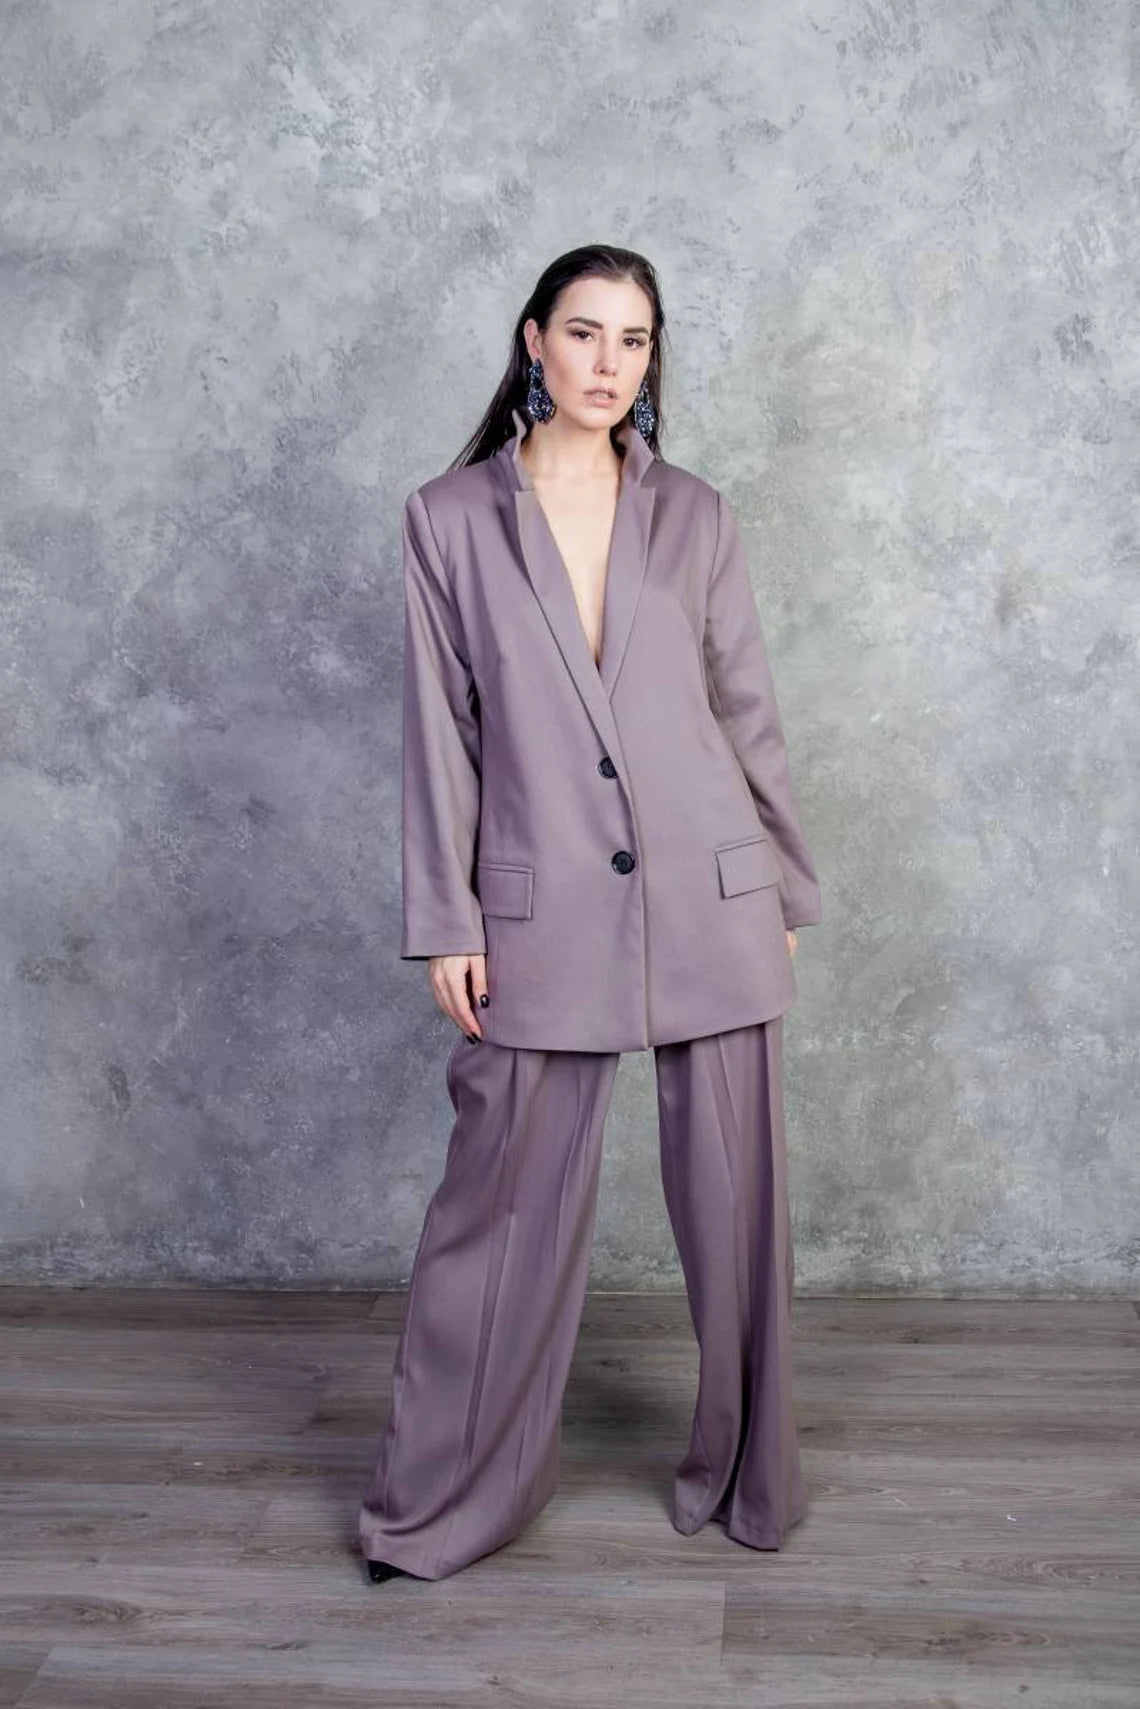 Womens Purple Workwear  Purple Formal Dresses Trousers  Jackets  Next  UK